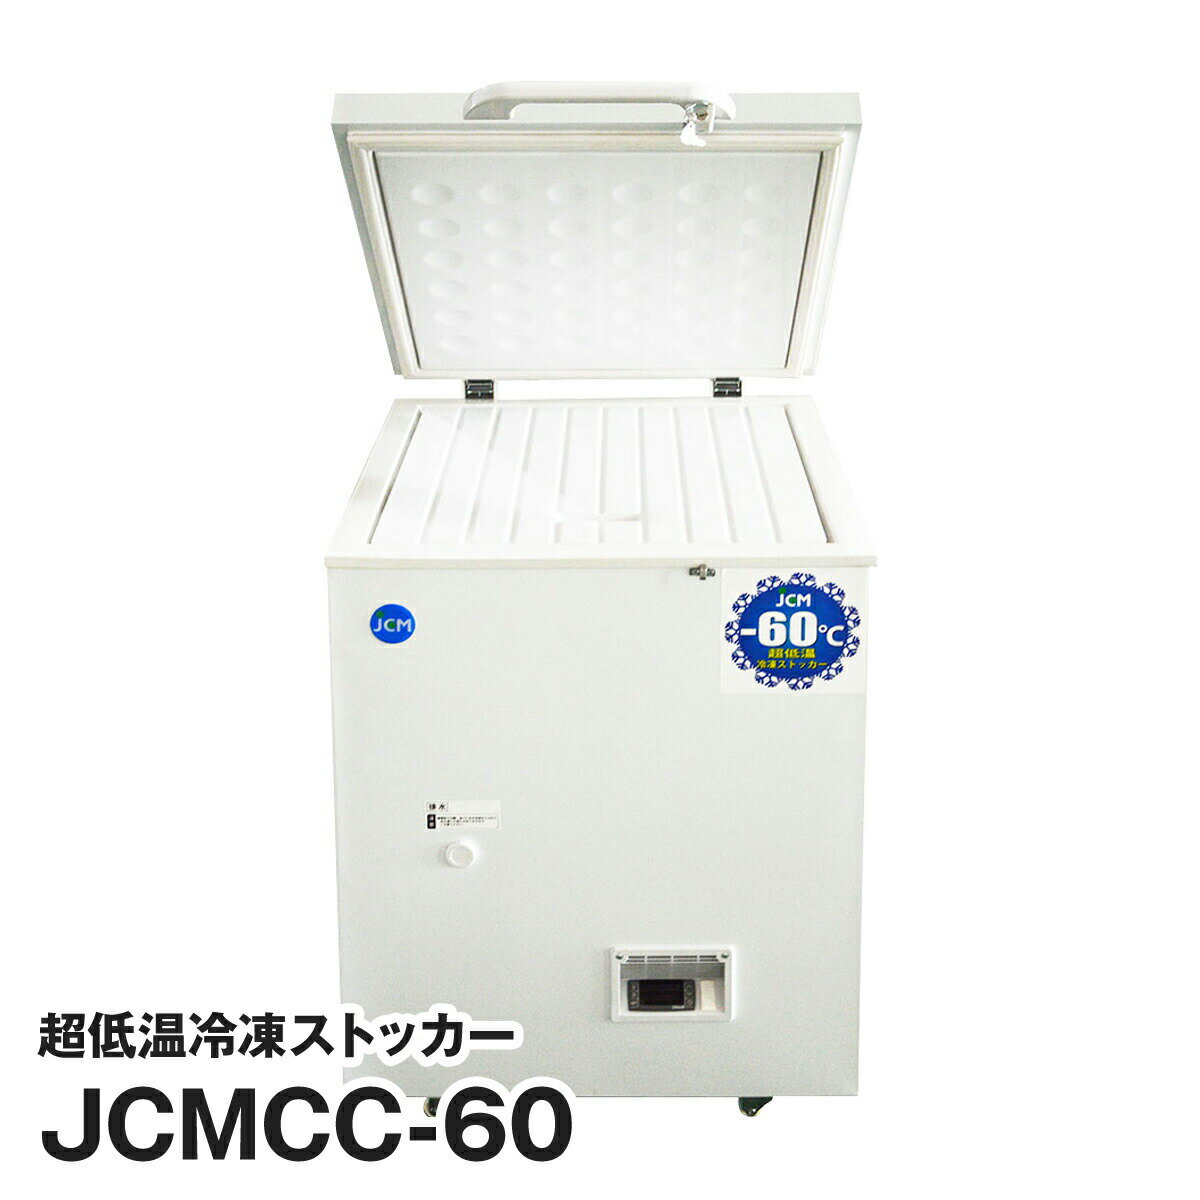 JCM社製 業務用 保冷庫 冷凍庫 66L 超低温冷凍ストッカー JCMCC-60 新品